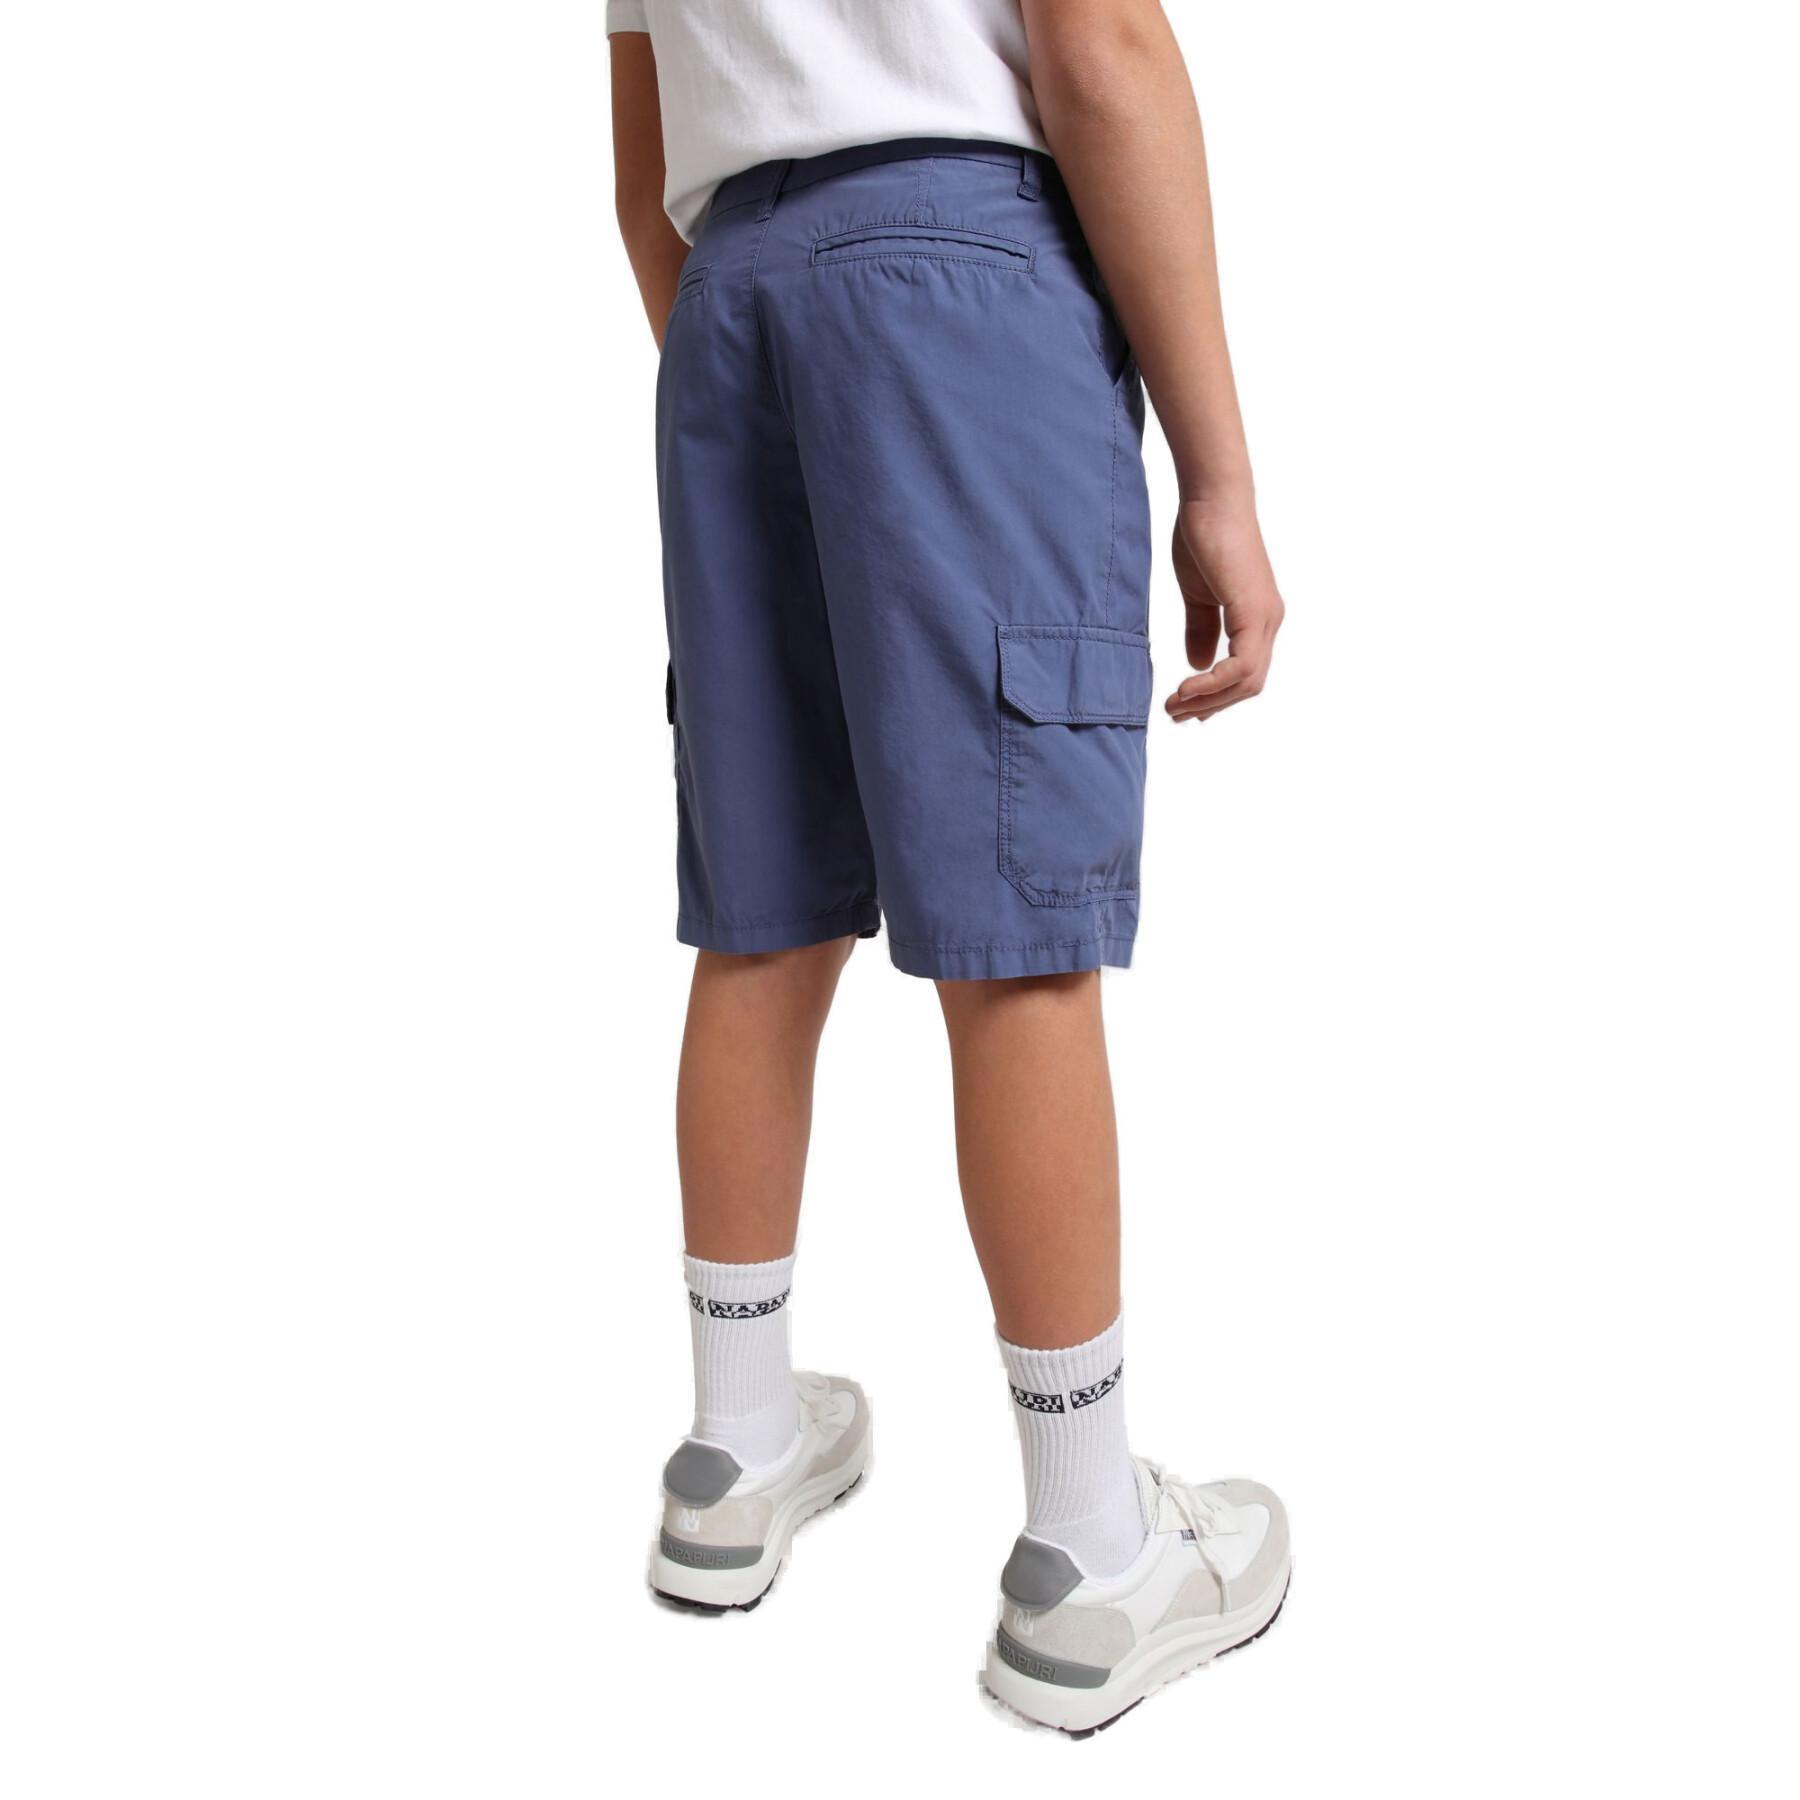 Bermuda shorts for children Napapijri Noto 4